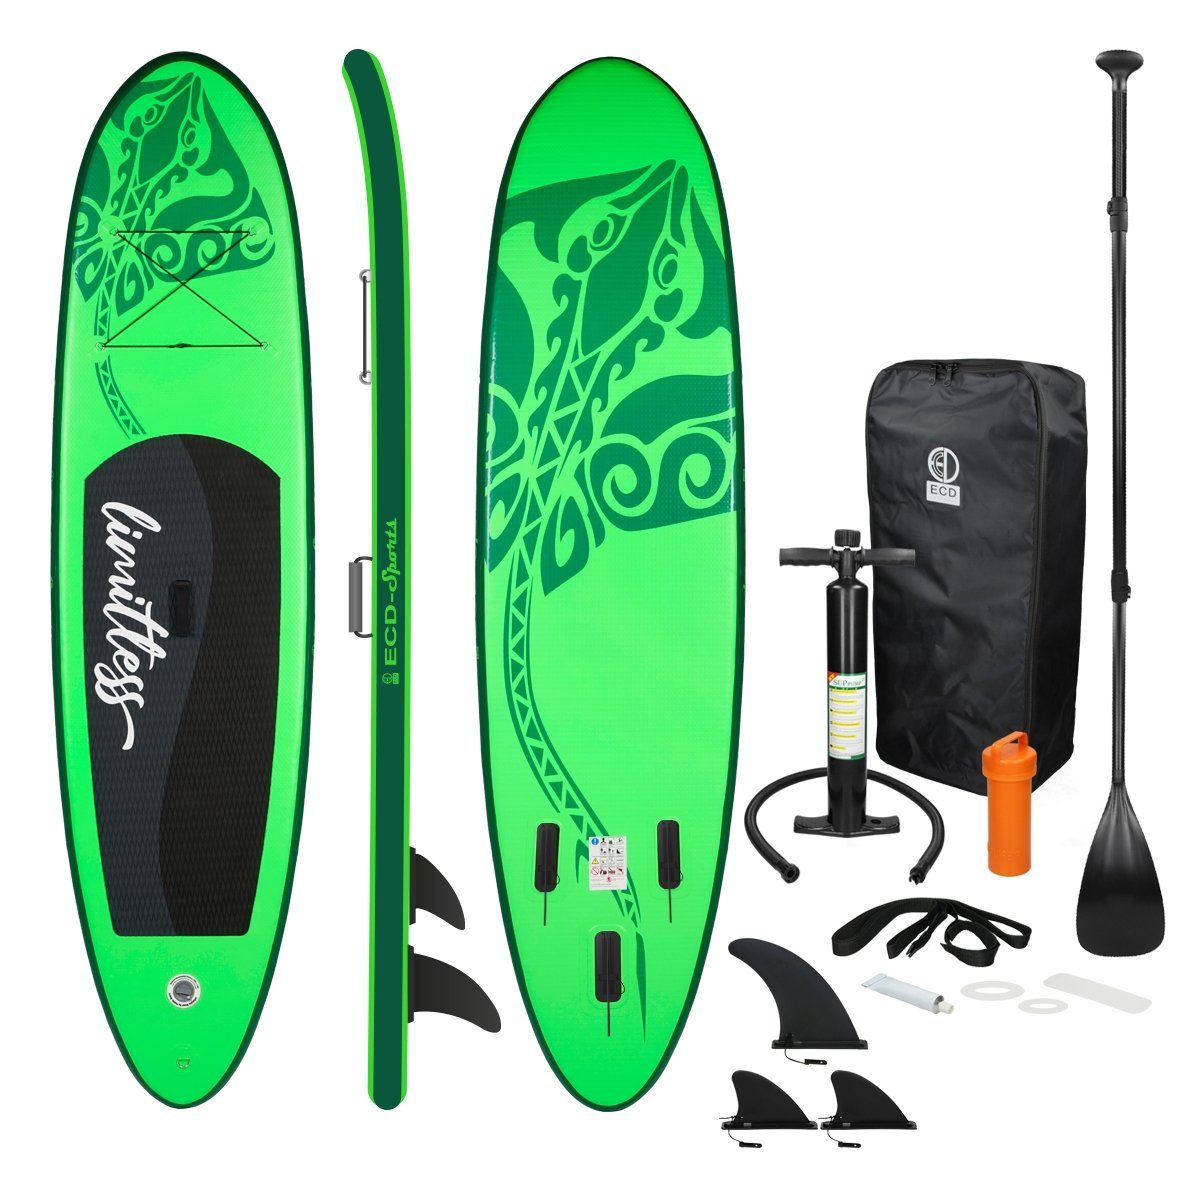 ECD Germany SUP-Board Aufblasbares Stand Up Paddle Board Limitless Surfboard, Grün 308x76x10cm PVC bis 120kg Pumpe Tragetasche Zubehör